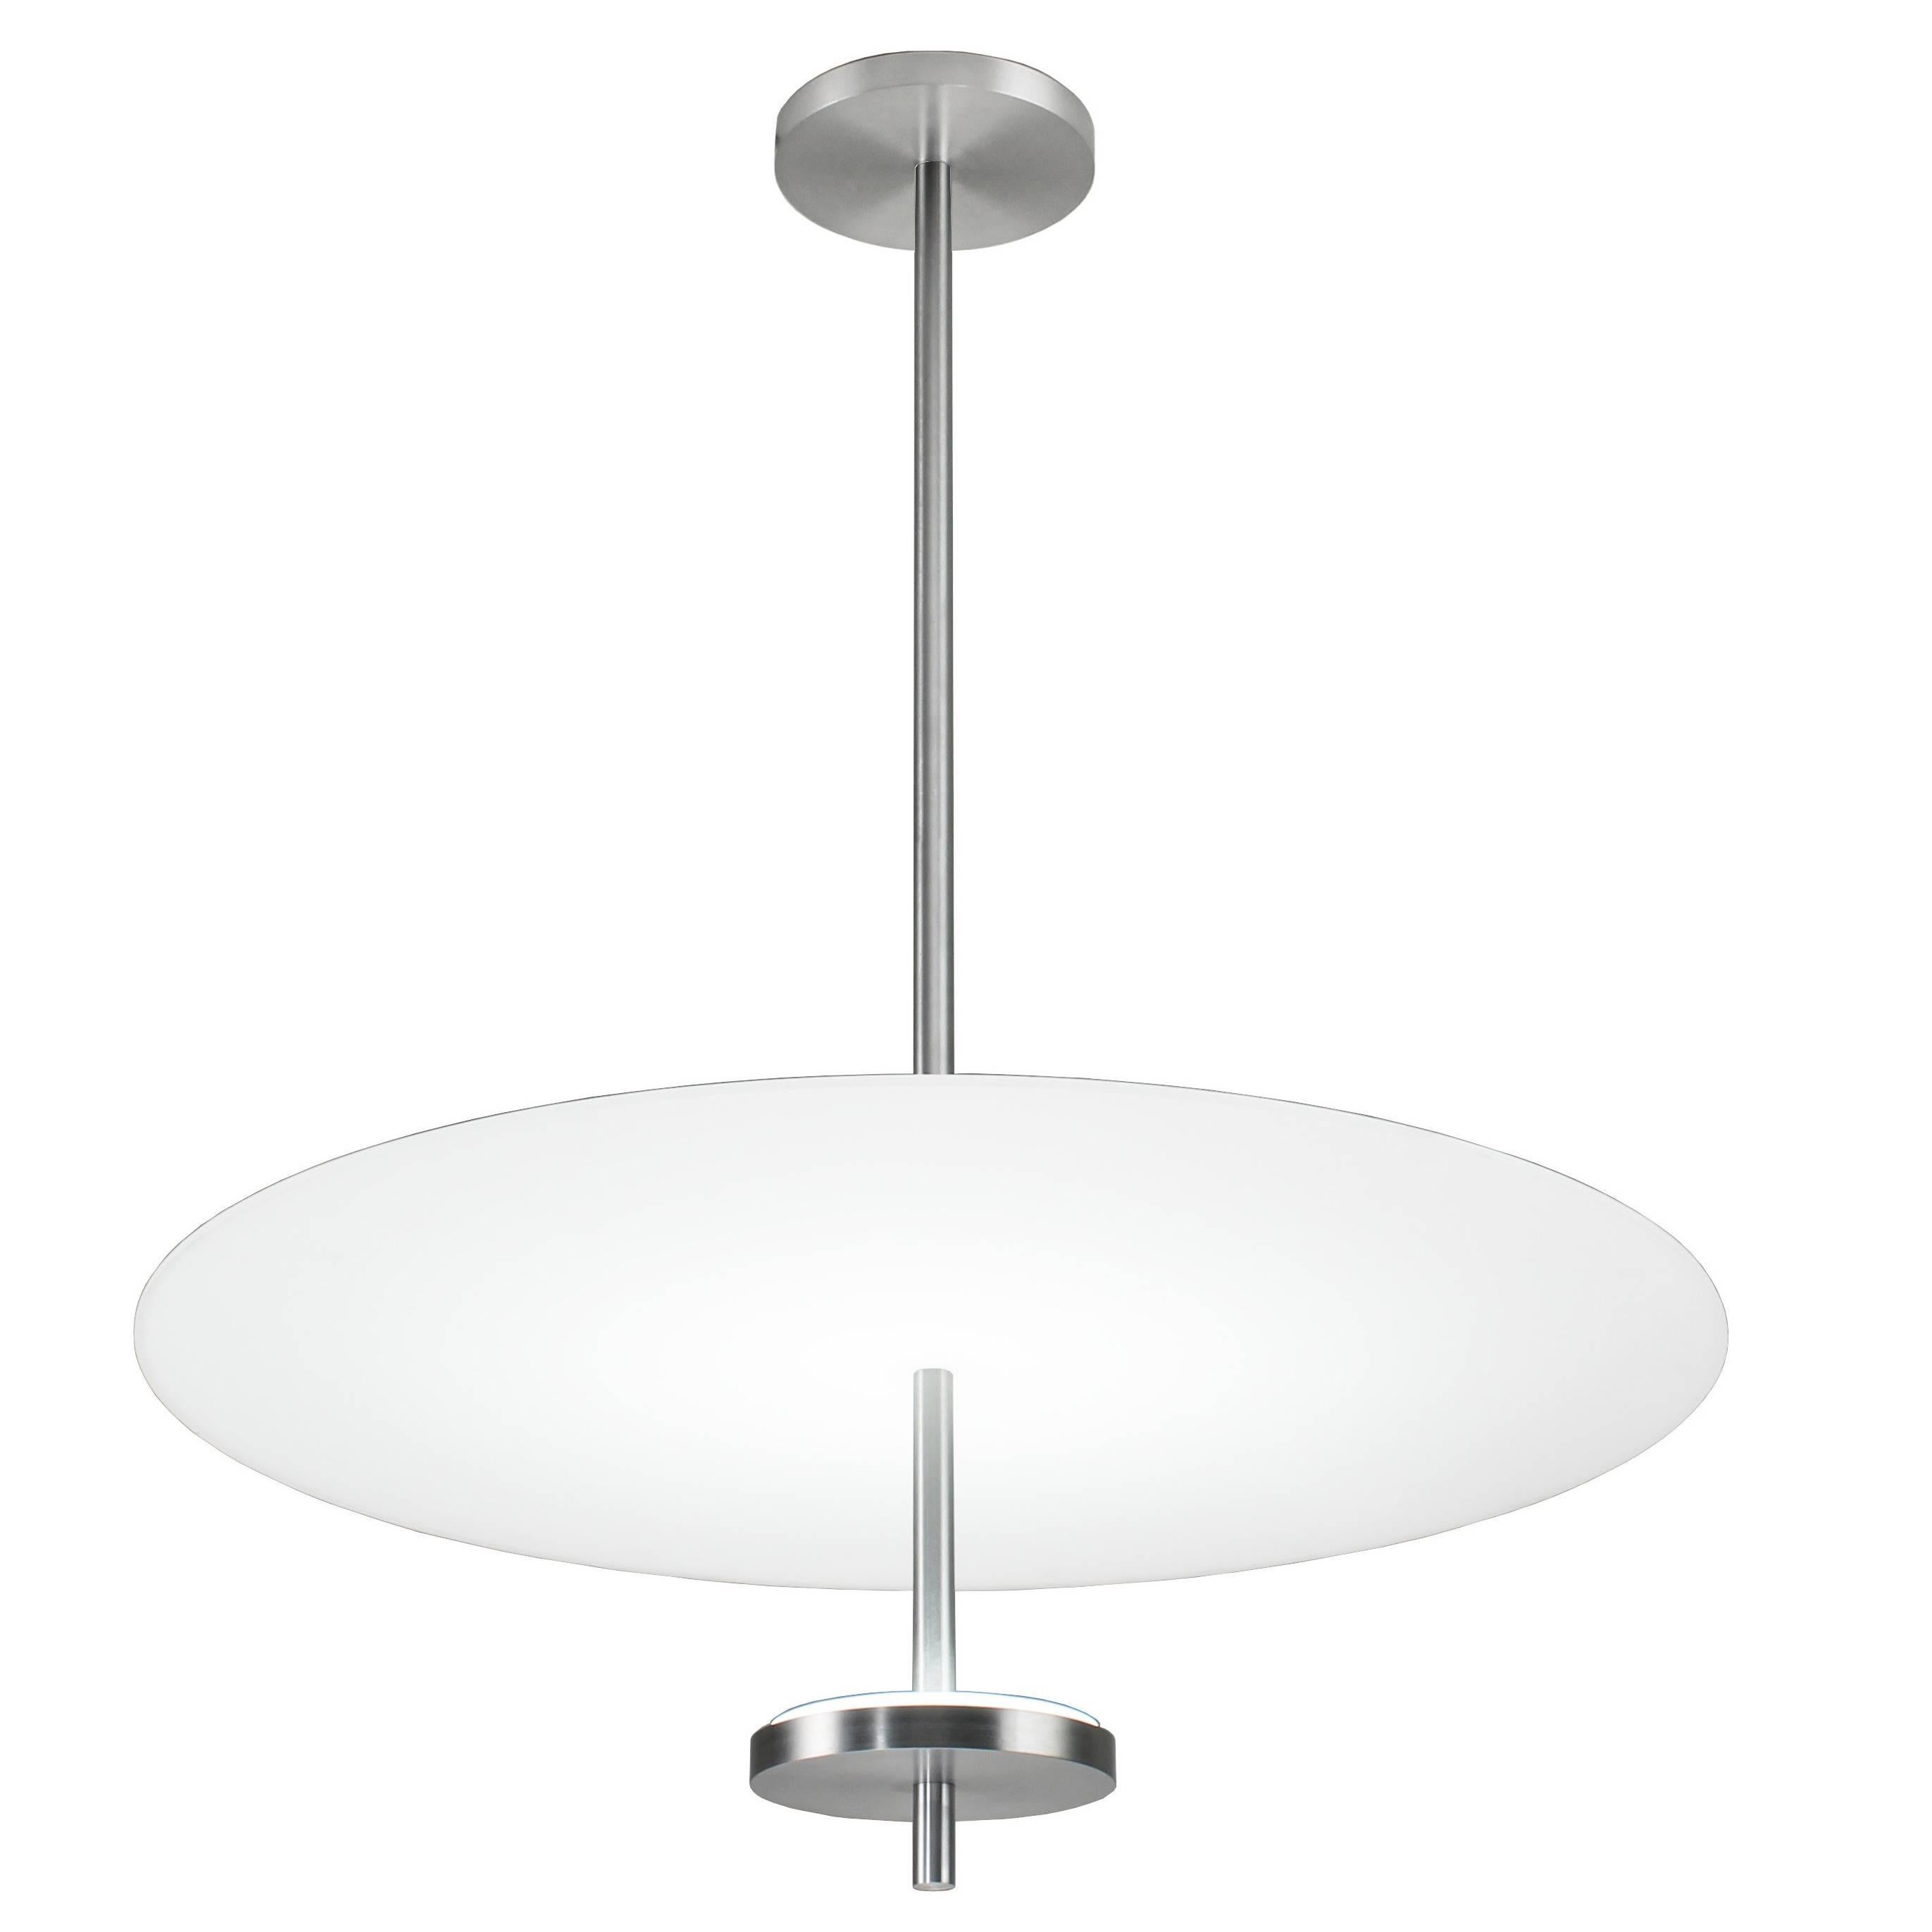 Mid-Century Modern Style Round Flat Glass Pendant Light, Satin Aluminium For Sale